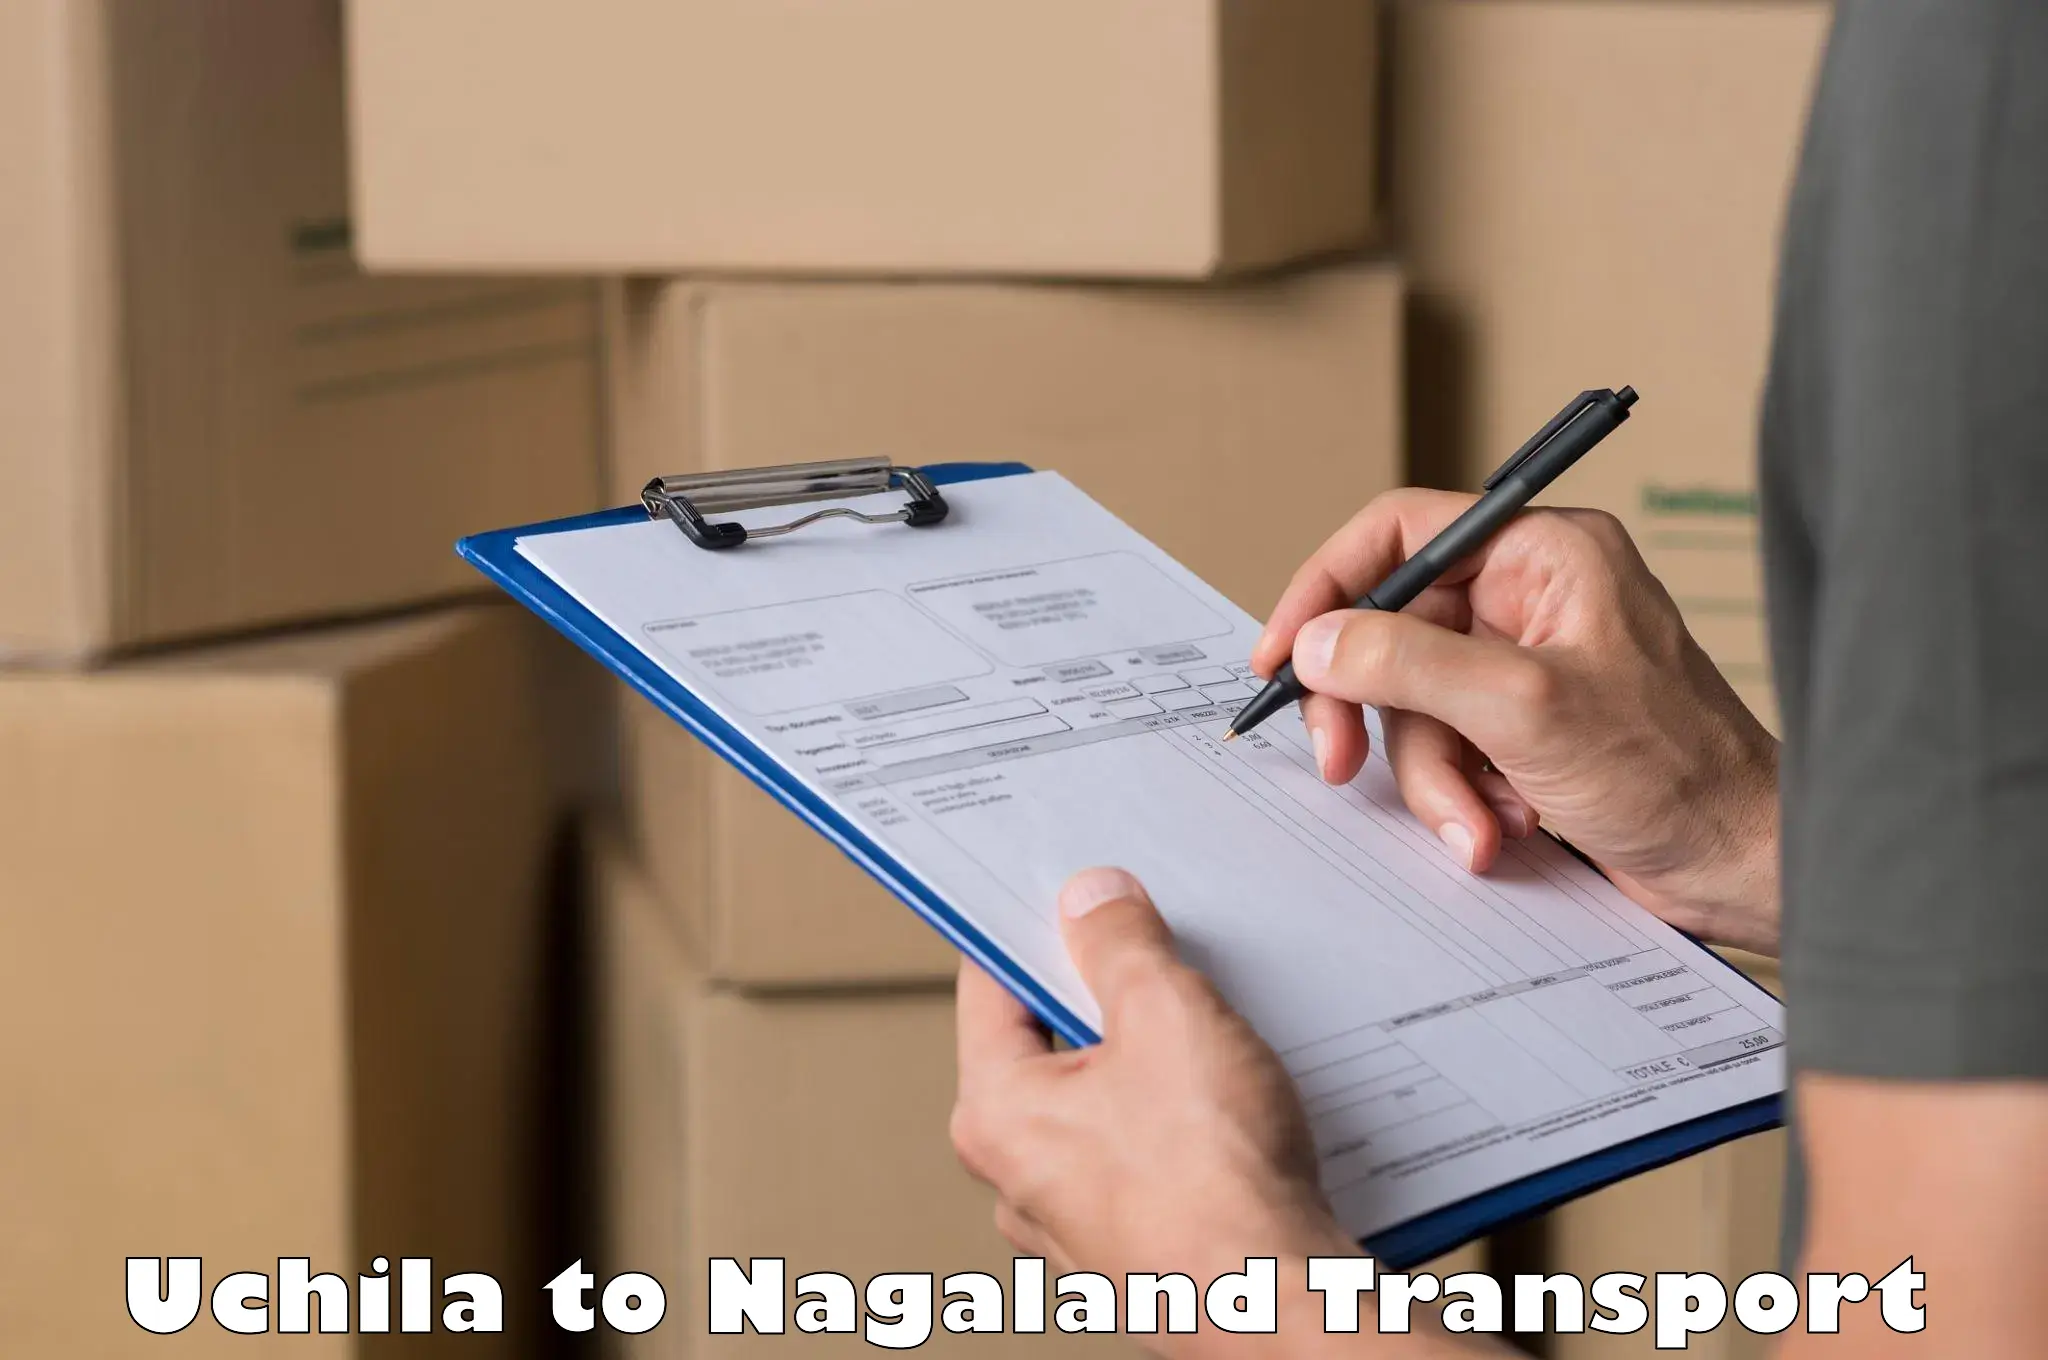 Vehicle transport services Uchila to Nagaland